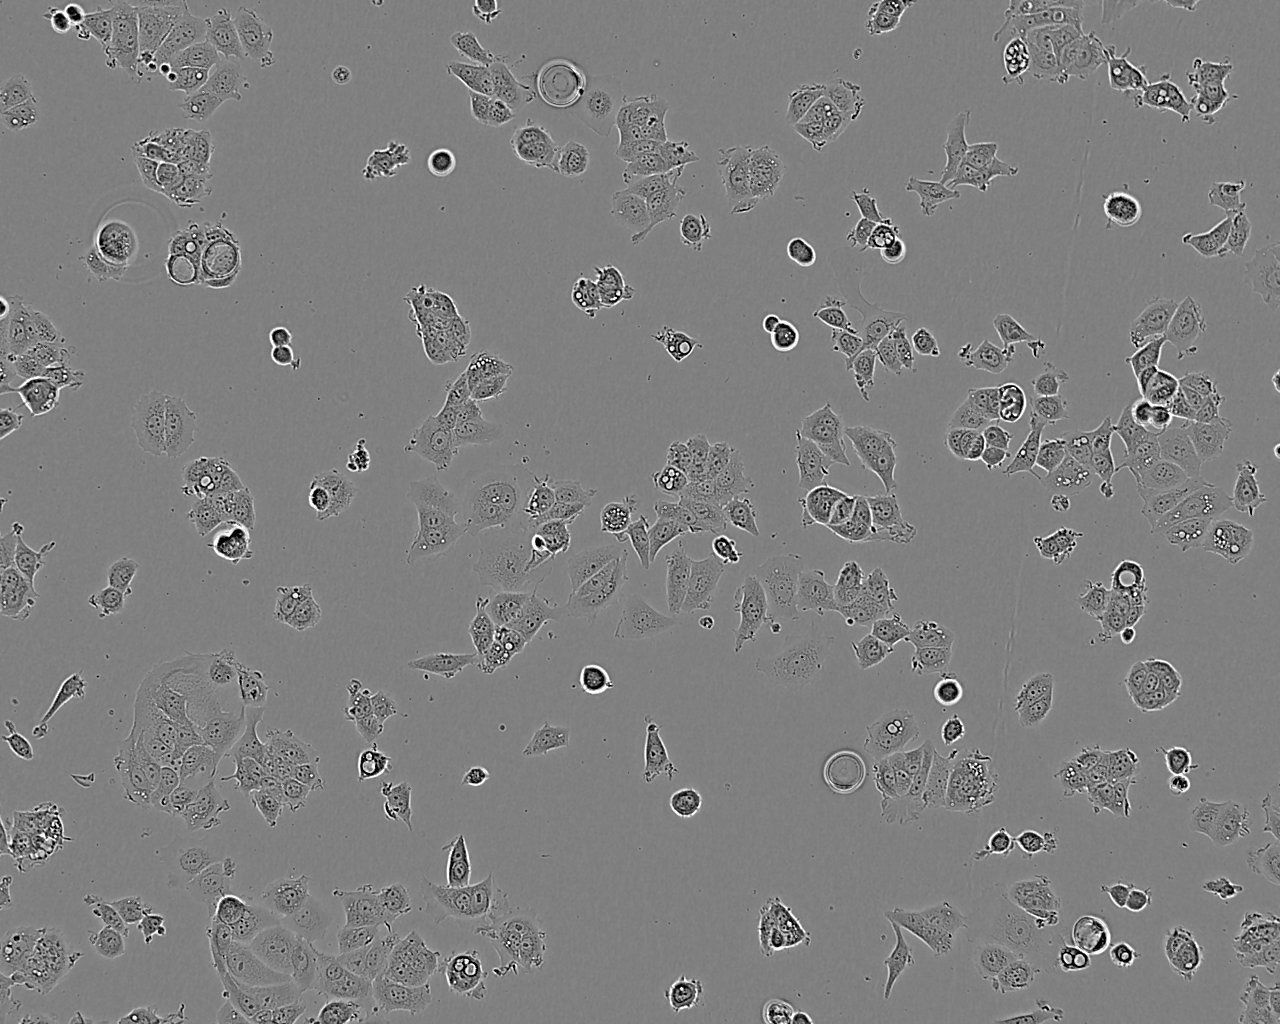 NRK-52E epithelioid cells正常大鼠肾细胞系,NRK-52E epithelioid cells